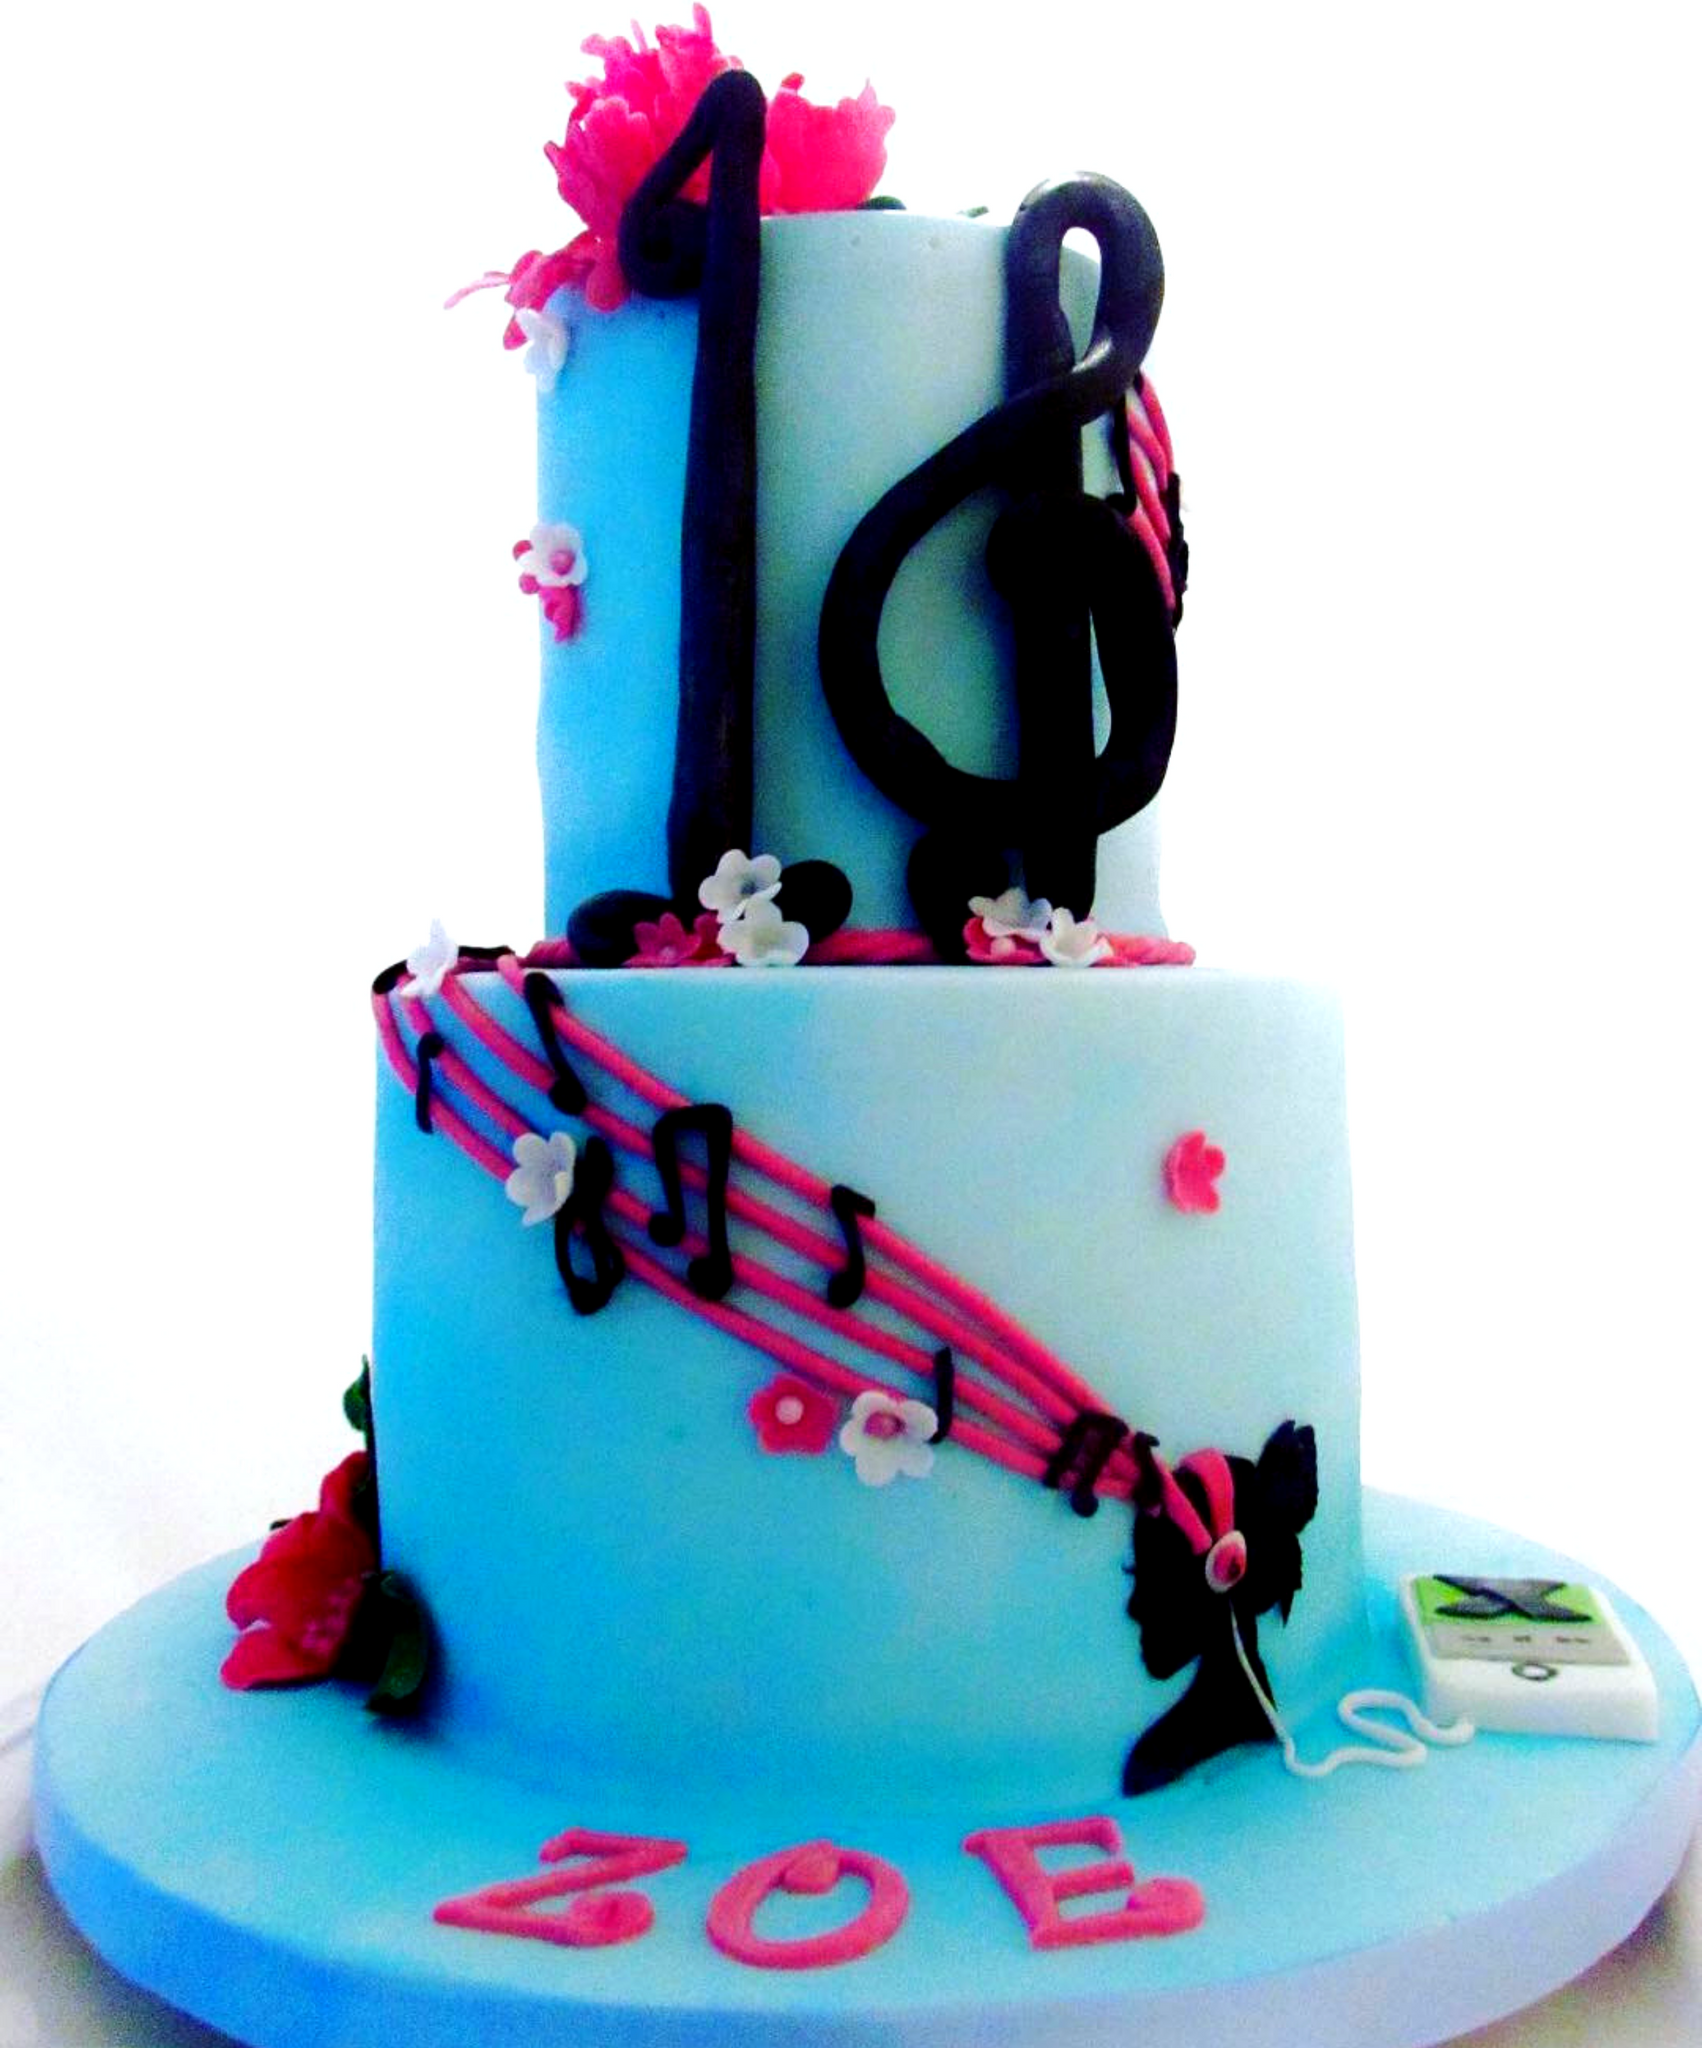 Music Lover’s Cake